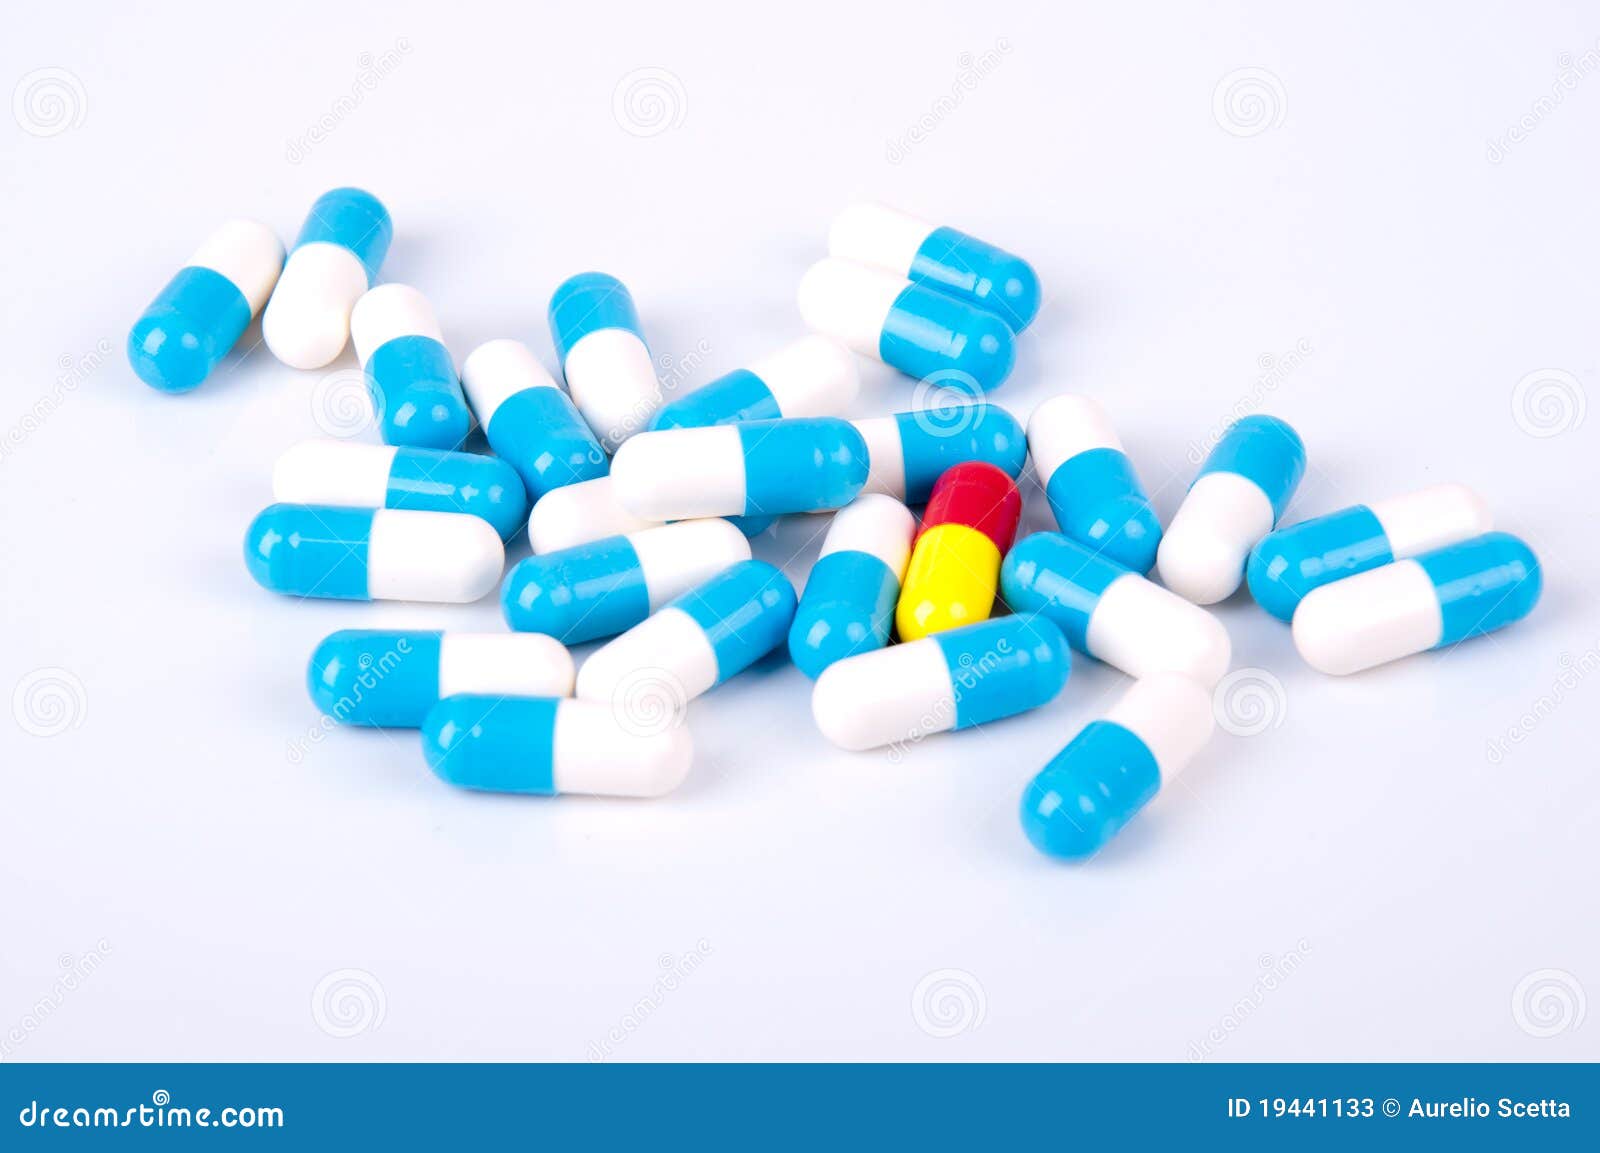 capsules of medicament